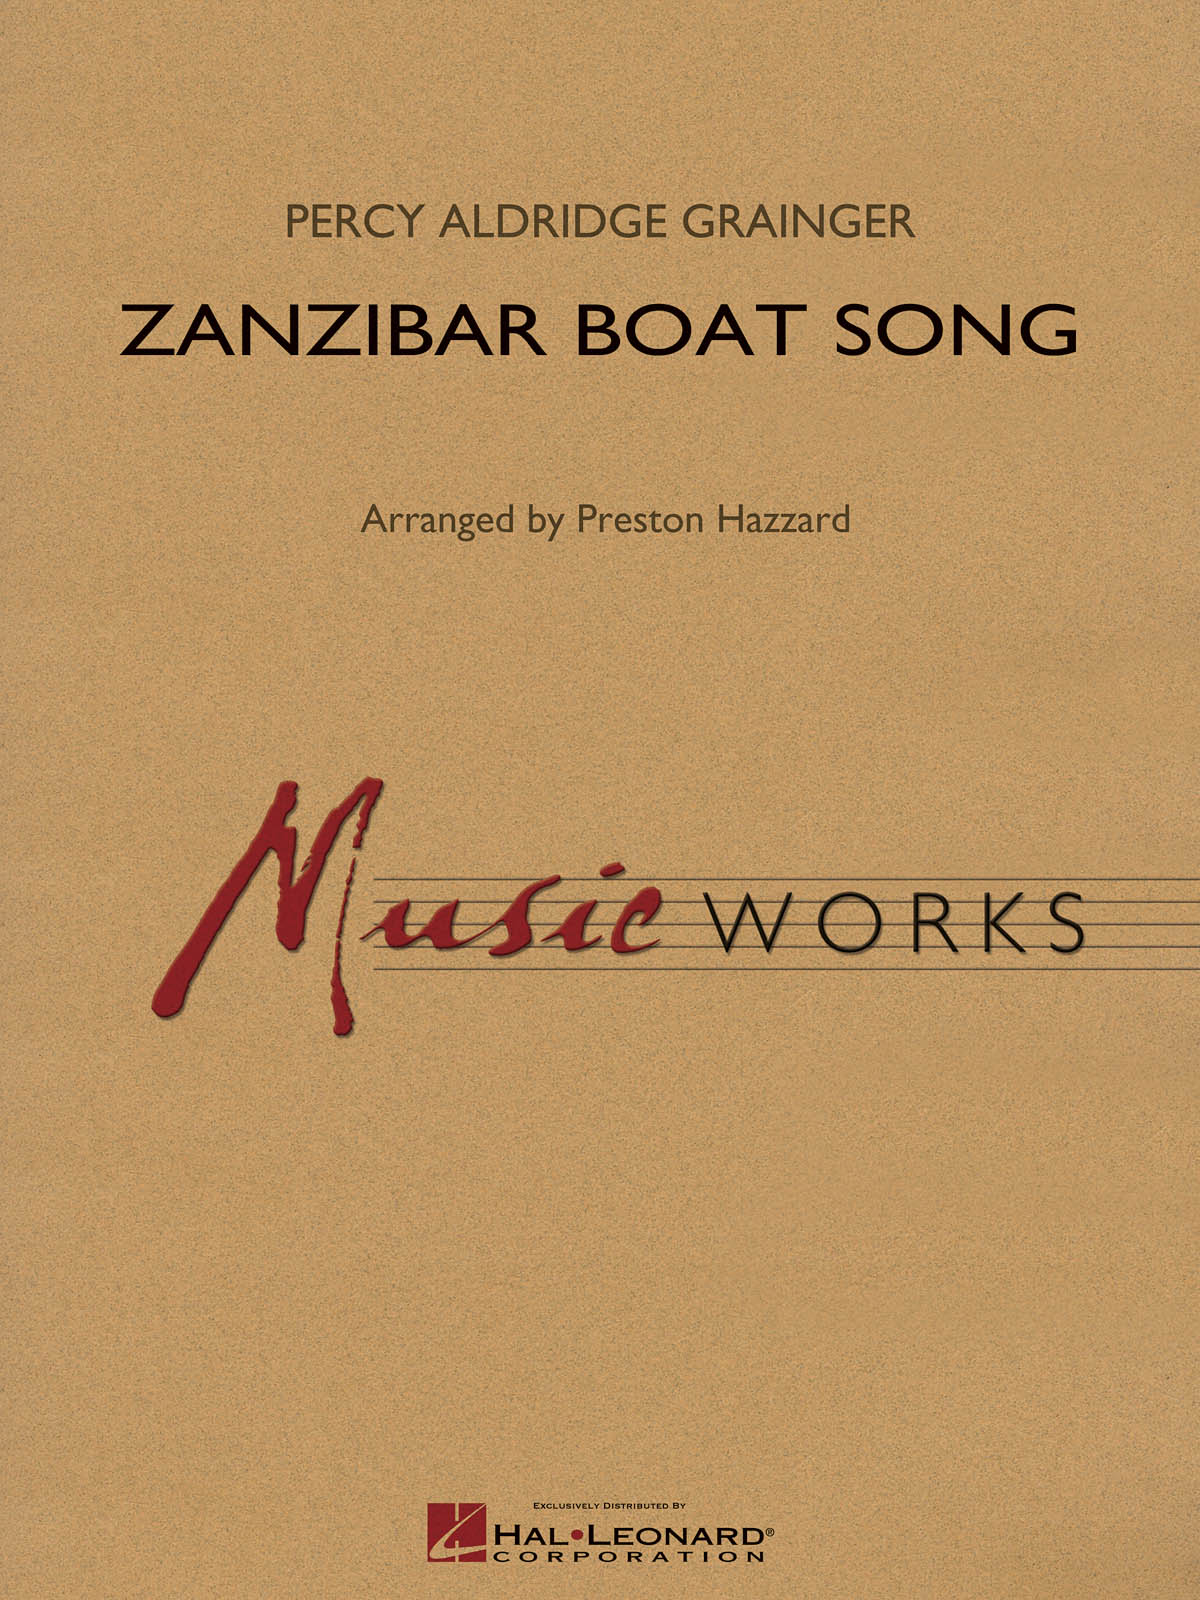 Percy Aldridge Grainger: Zanzibar Boat Song: Concert Band: Score